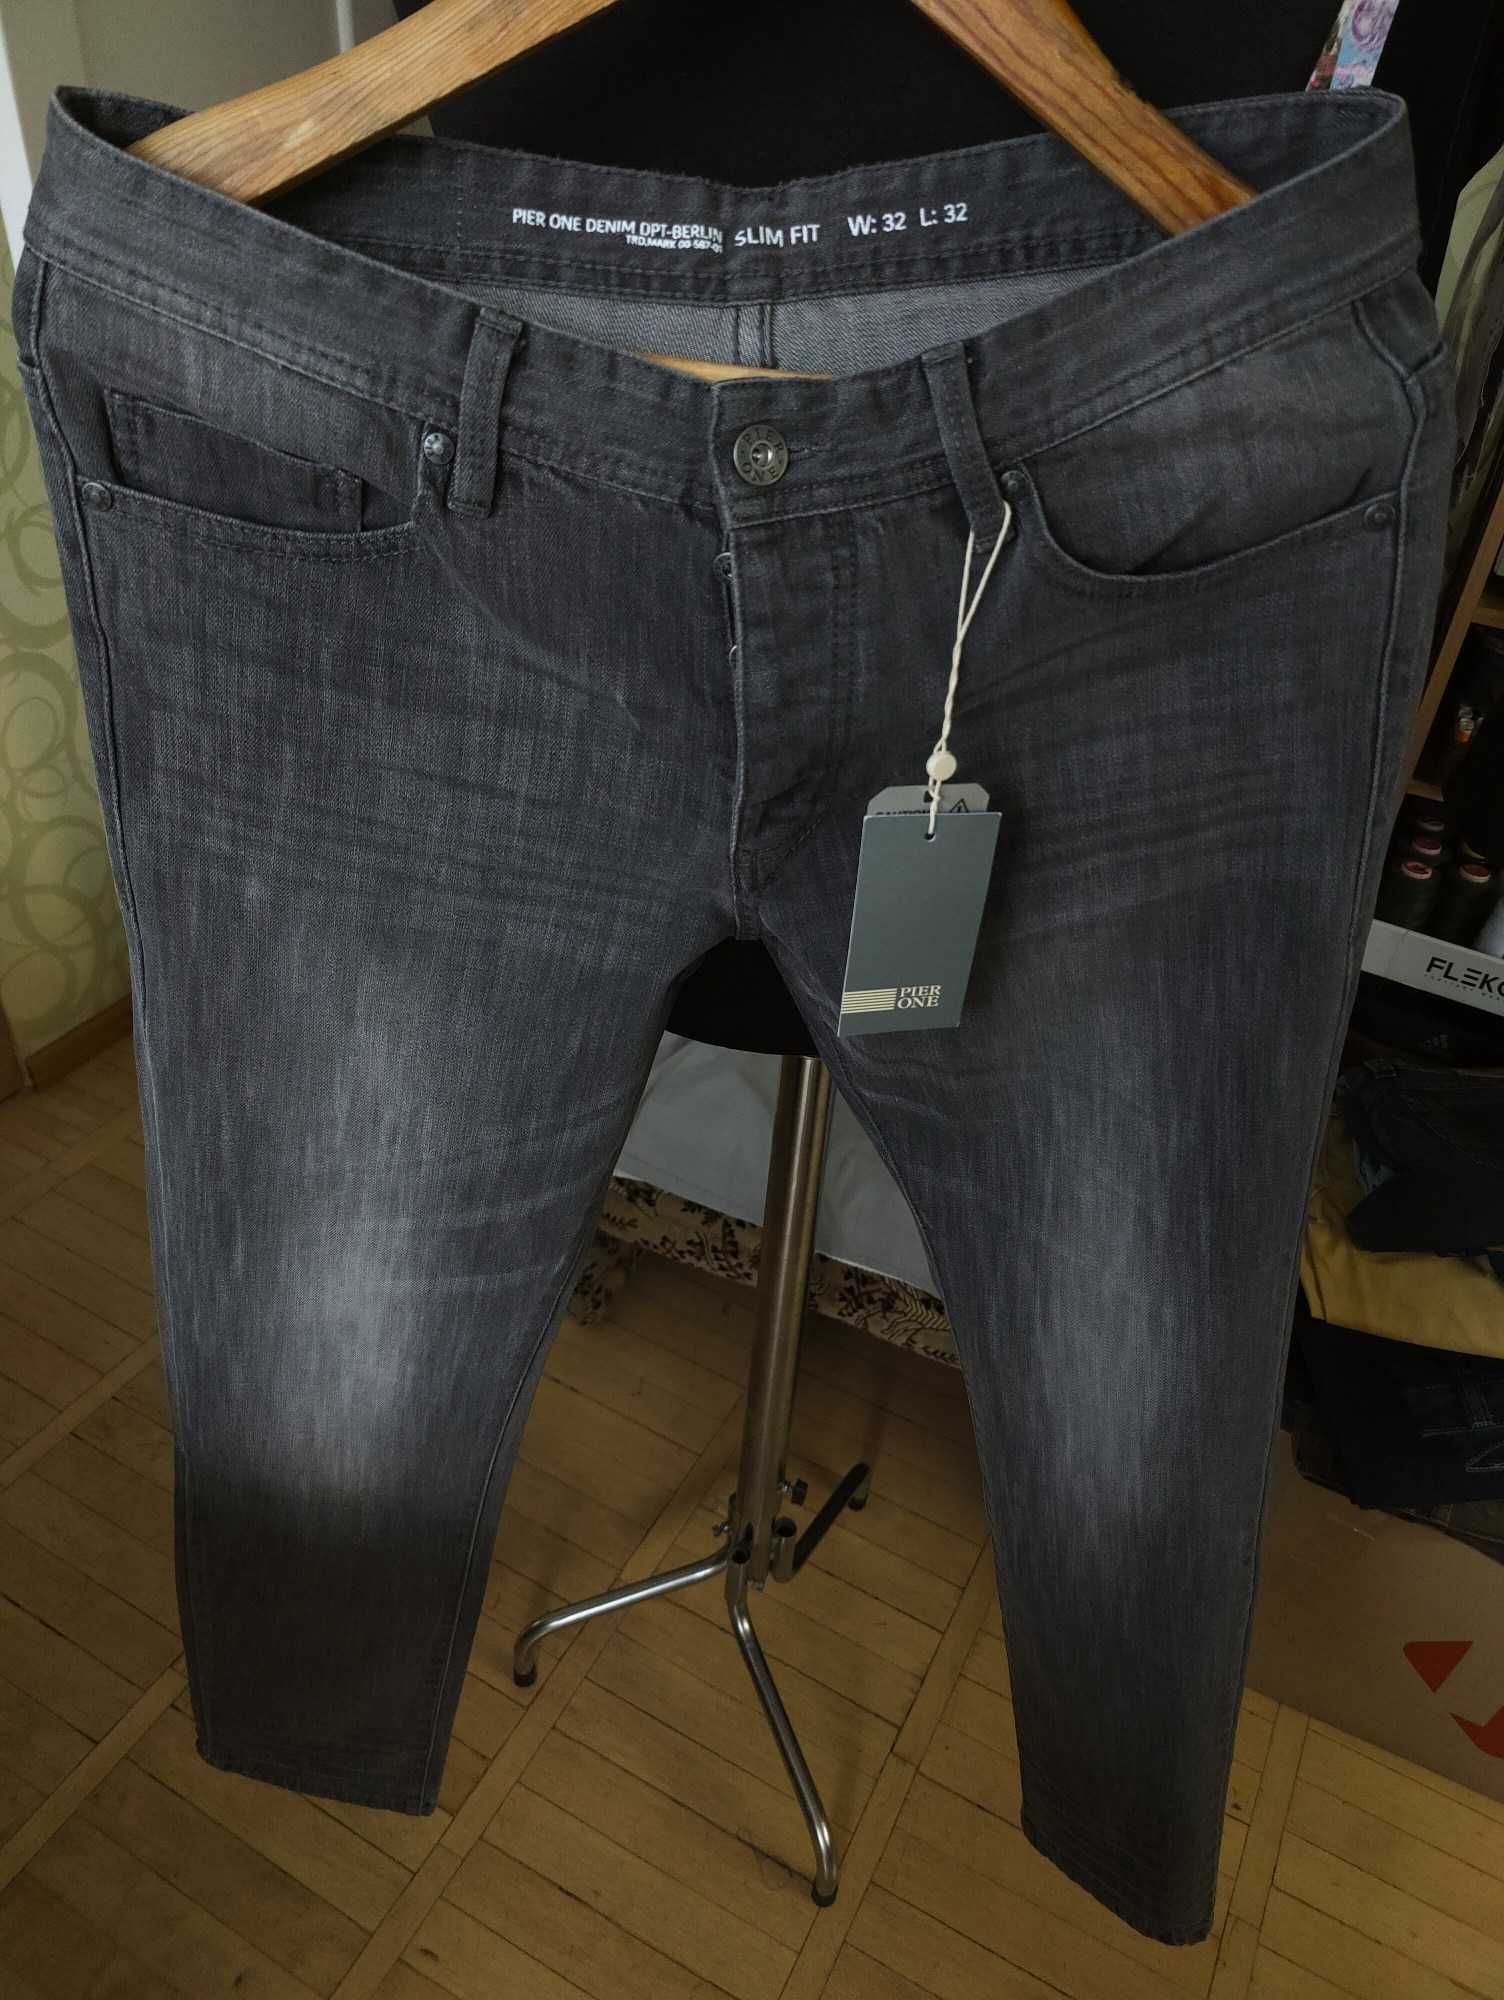 Джинсы Pierre One jeans W32 stretch Germany.